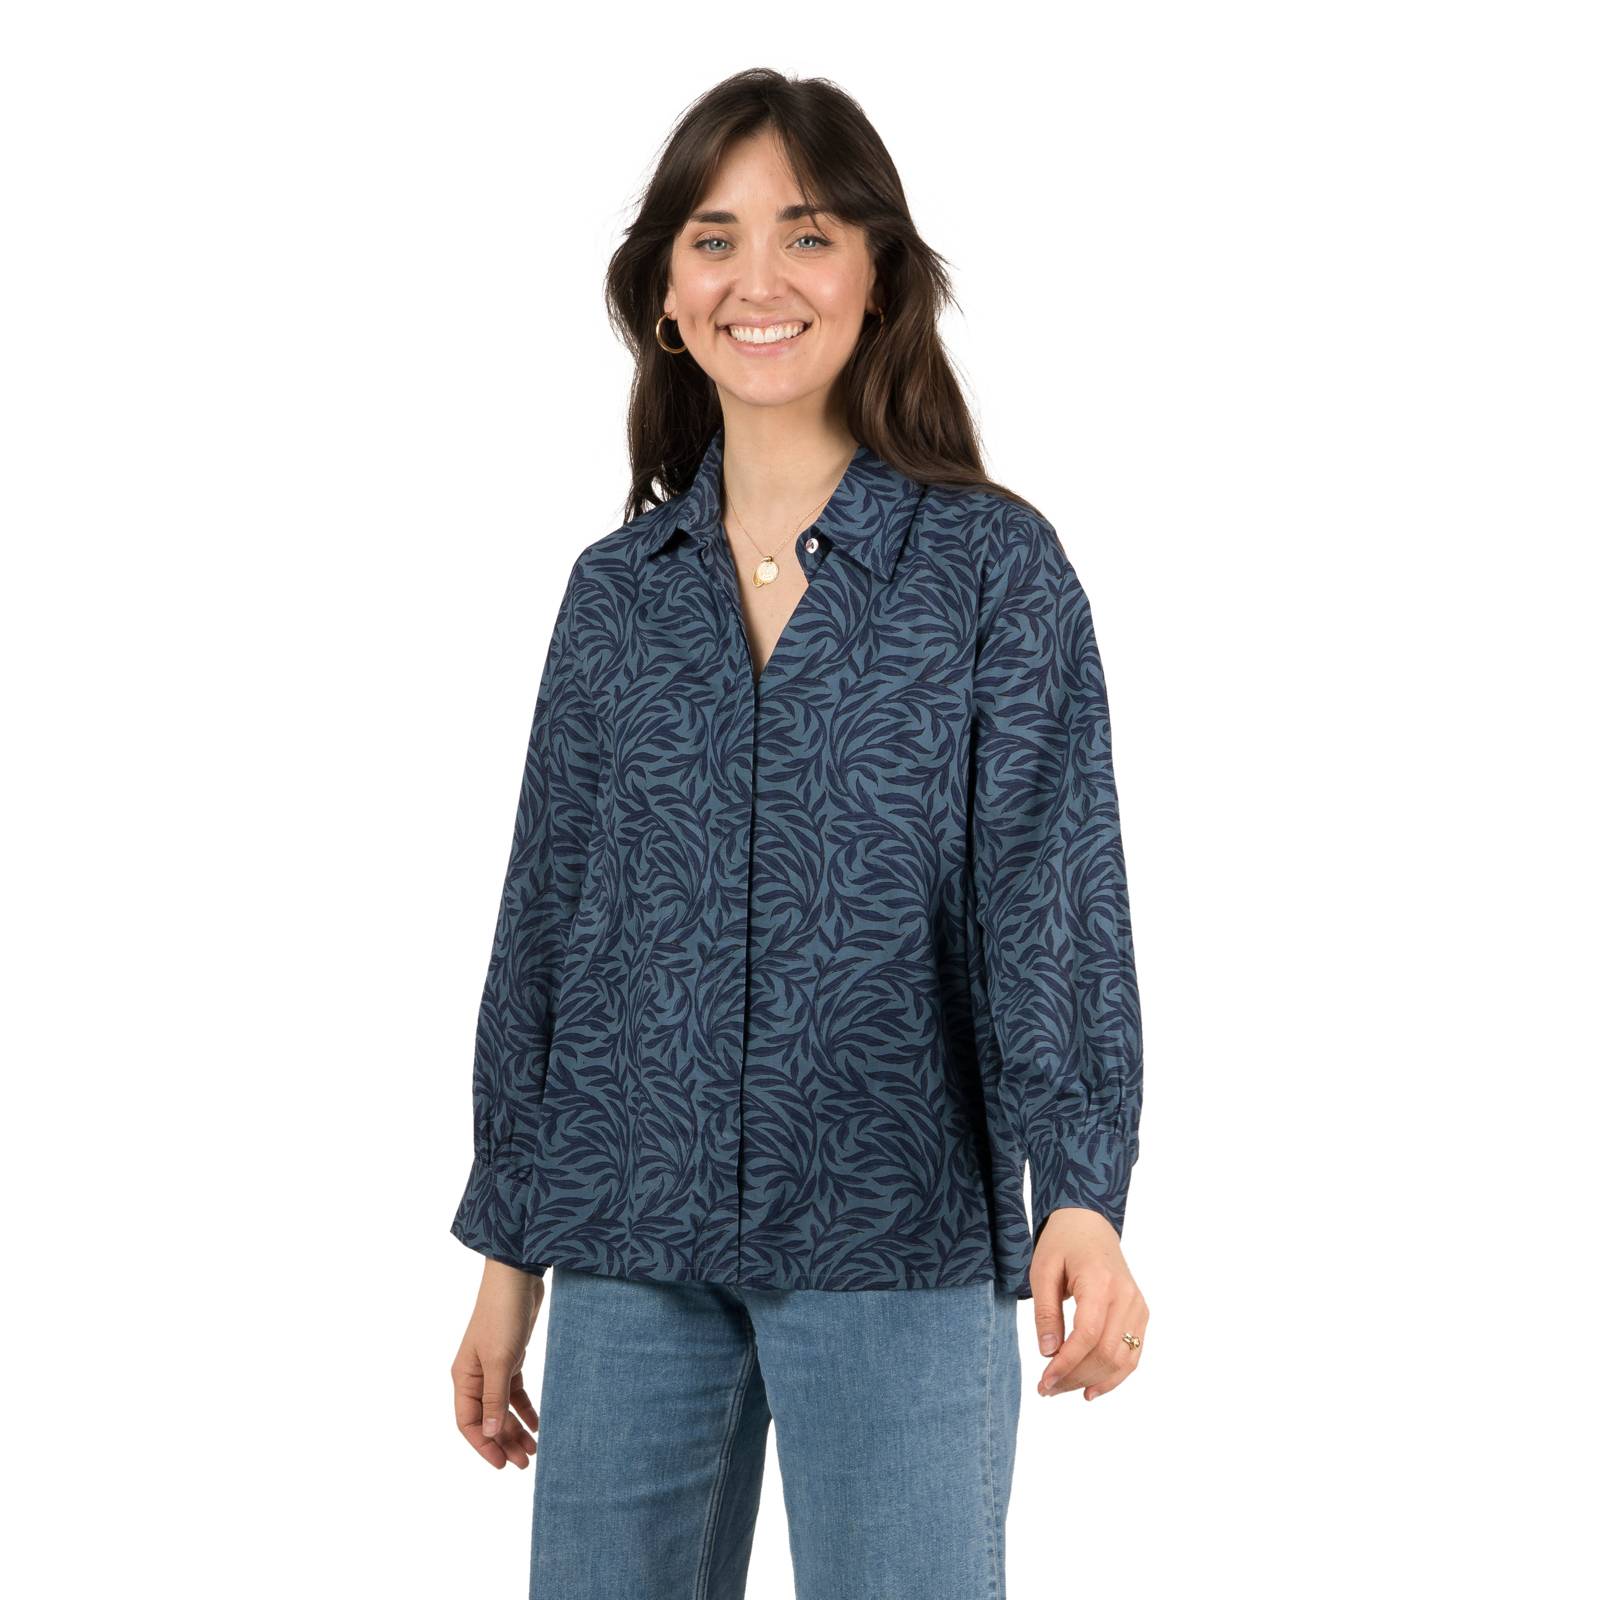 Chemises et blouses Chemise Lily Oli 100% Coton Bio Ethnique VT1610 Navy